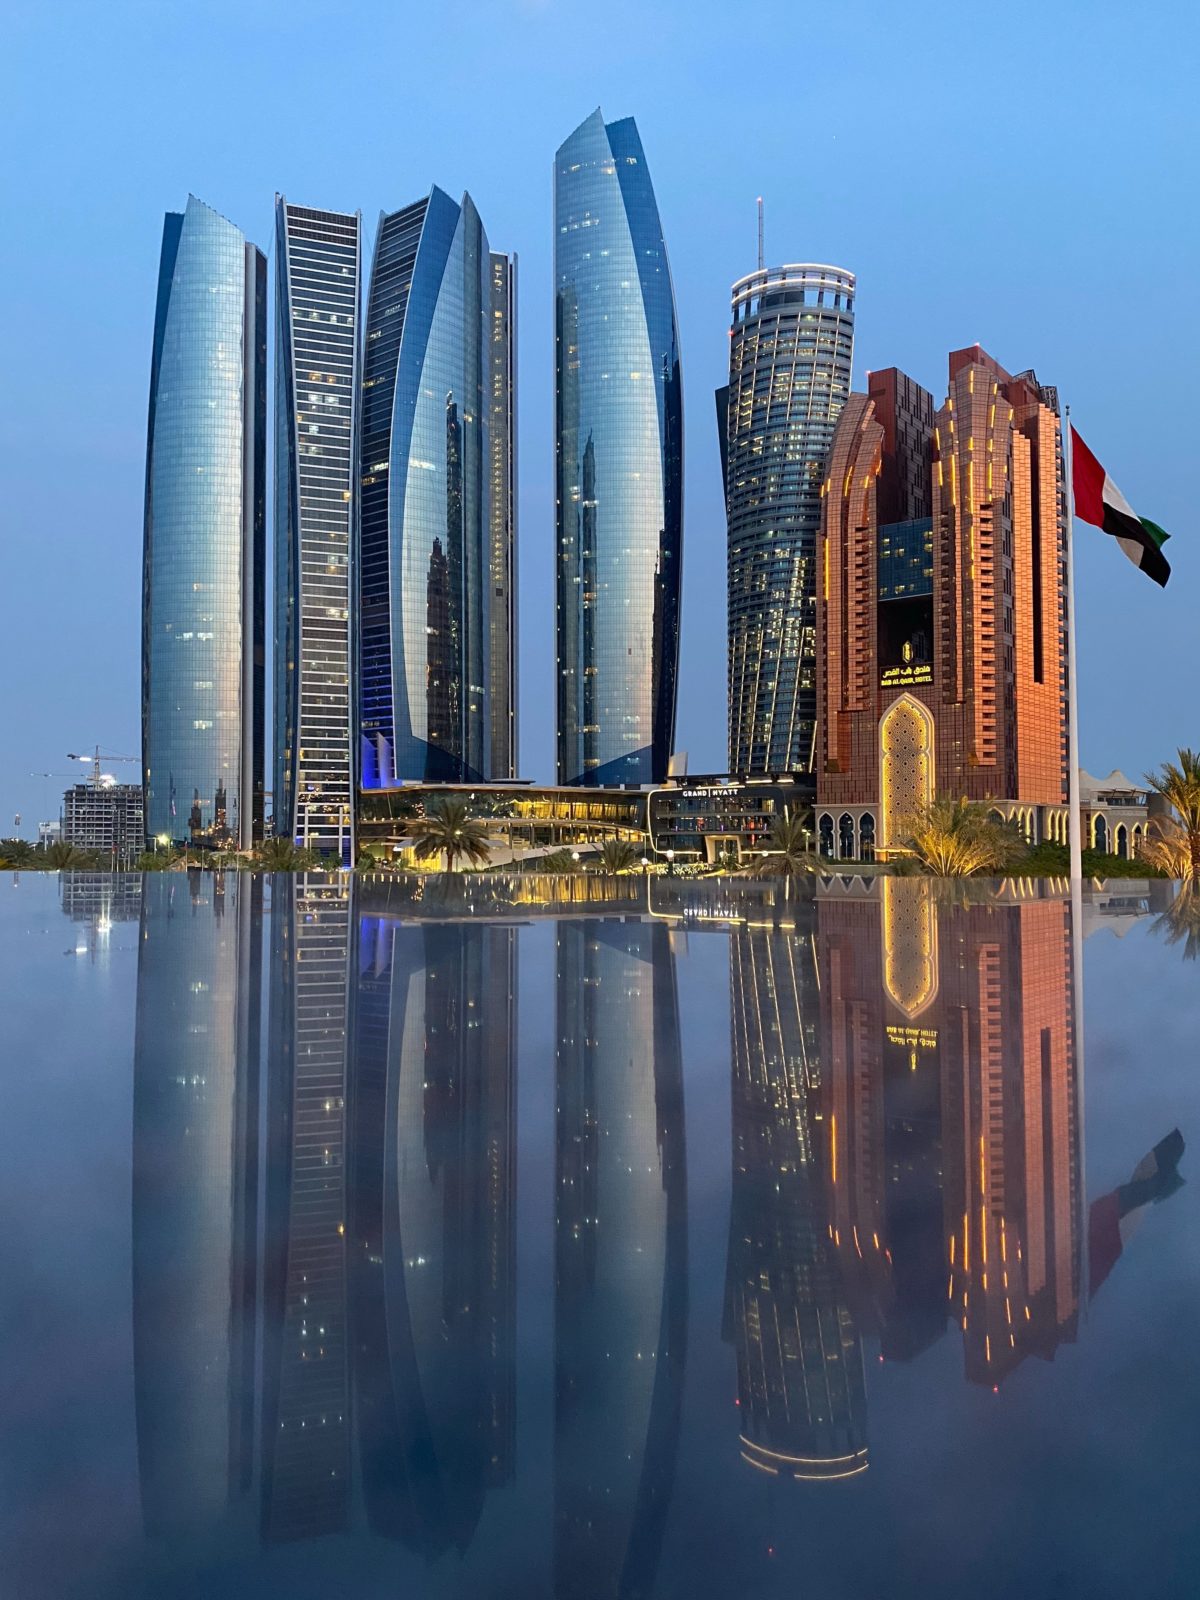 ما هي أهم مميزات الاستثمار العقاري في أبو ظبي